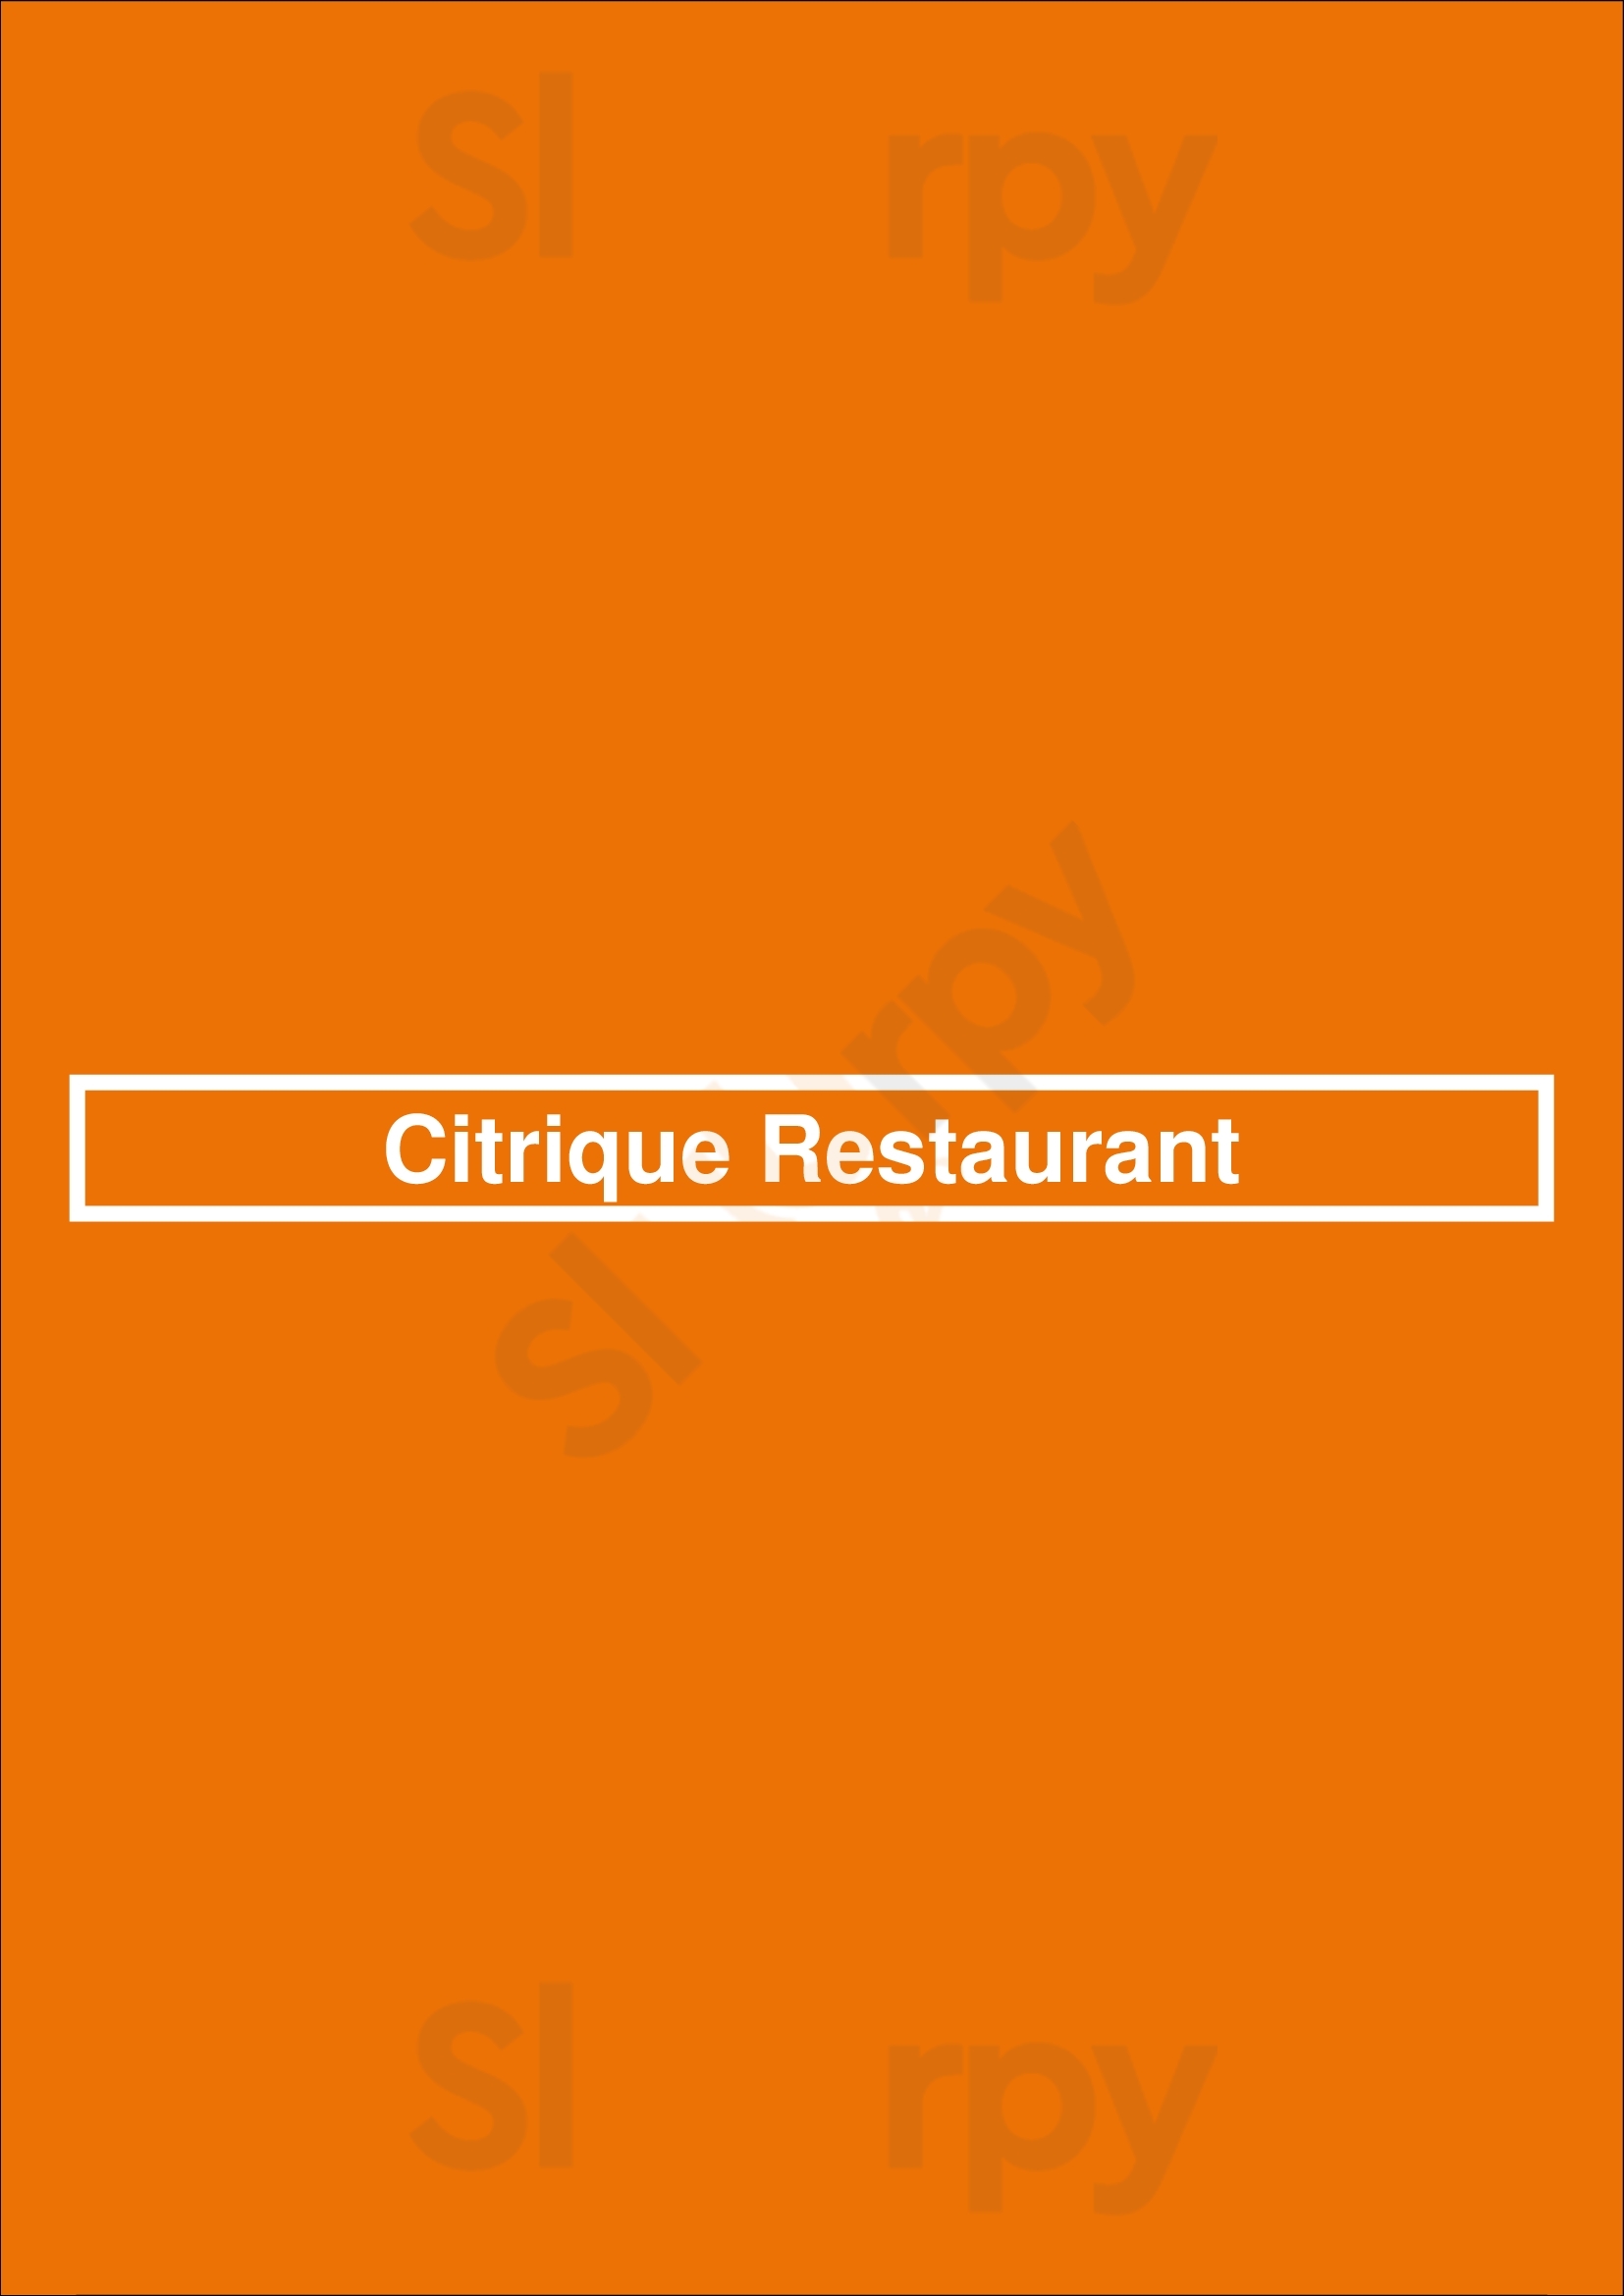 Citrique Restaurant Surfers Paradise Menu - 1